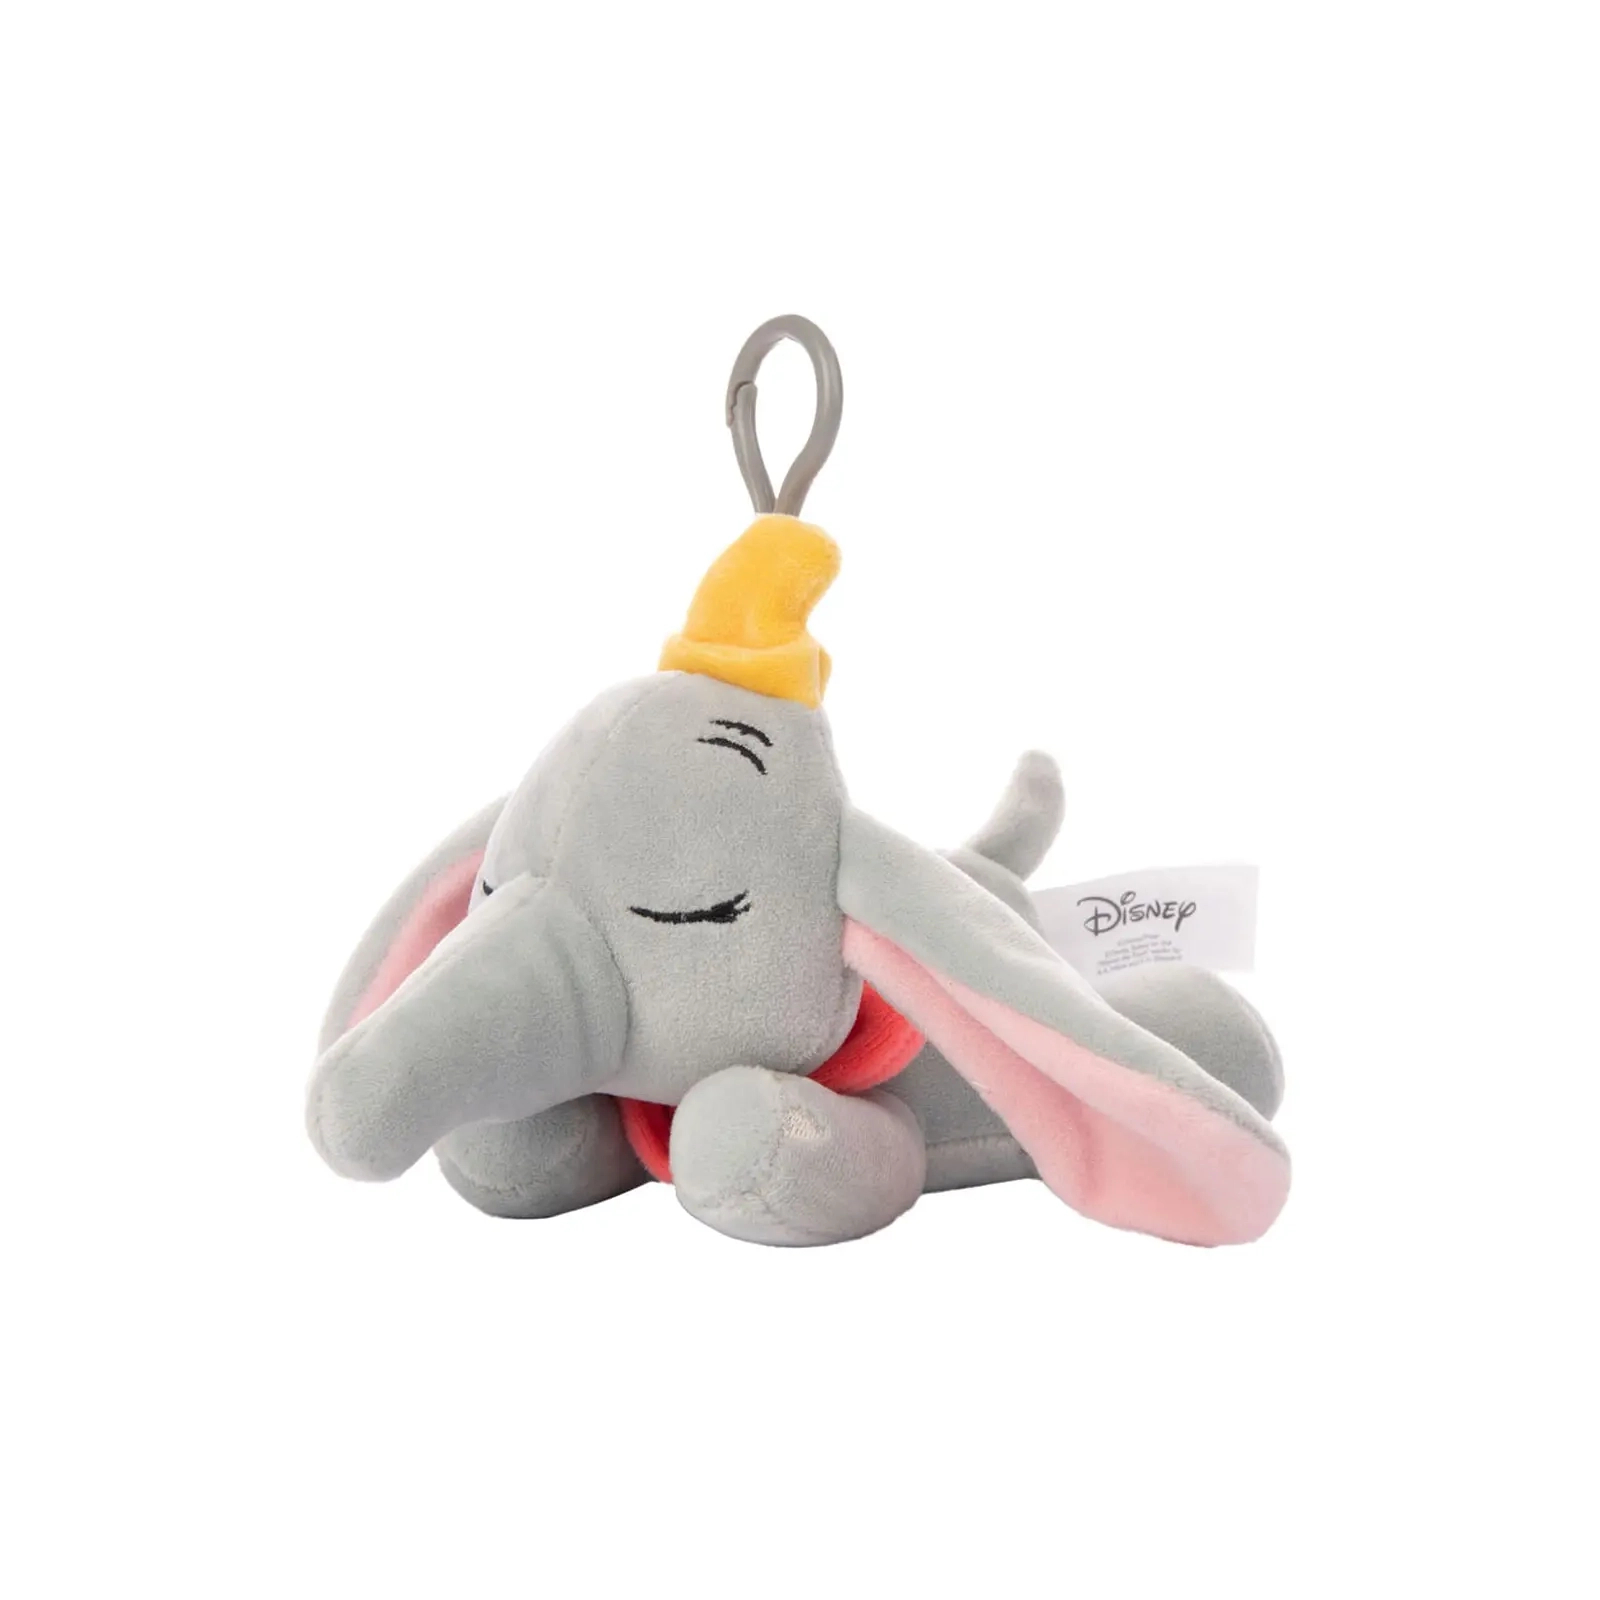 Мягкая игрушка Sambro Disney Collectible мягконабивная Snuglets Джамбо с клипсой15 см (DSG-9429-2)